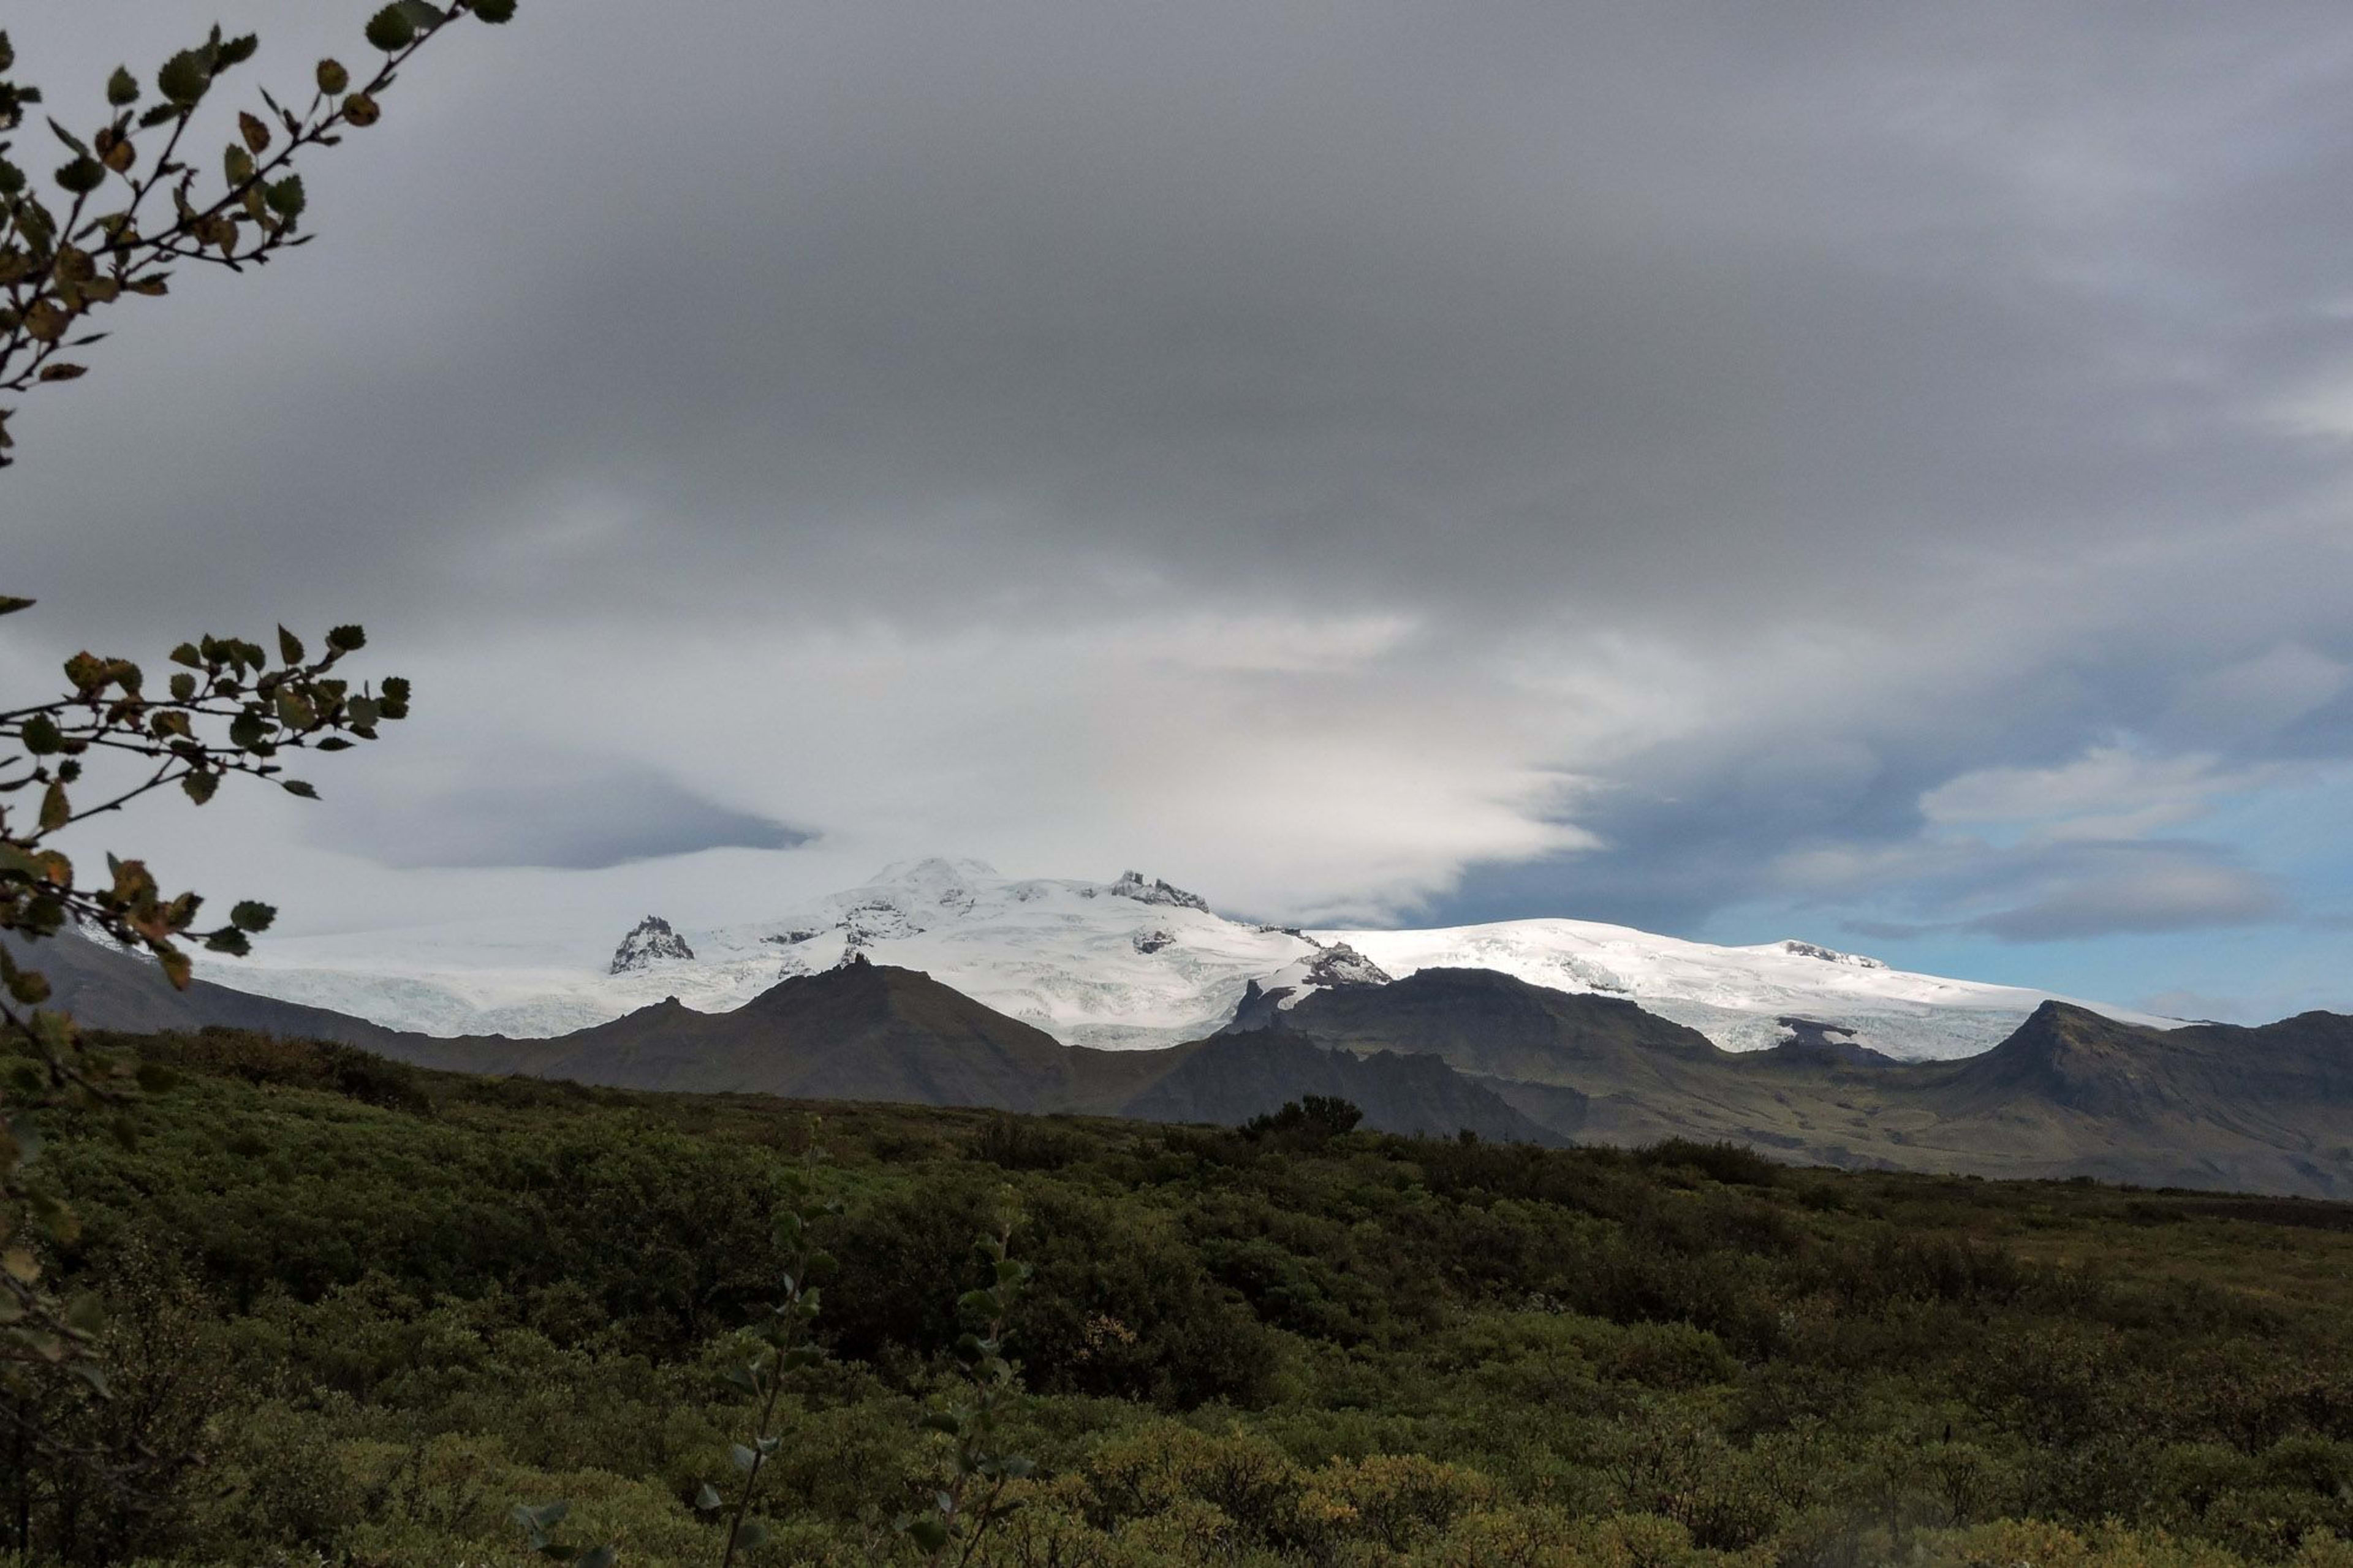 oraefajokull volcanic glacier